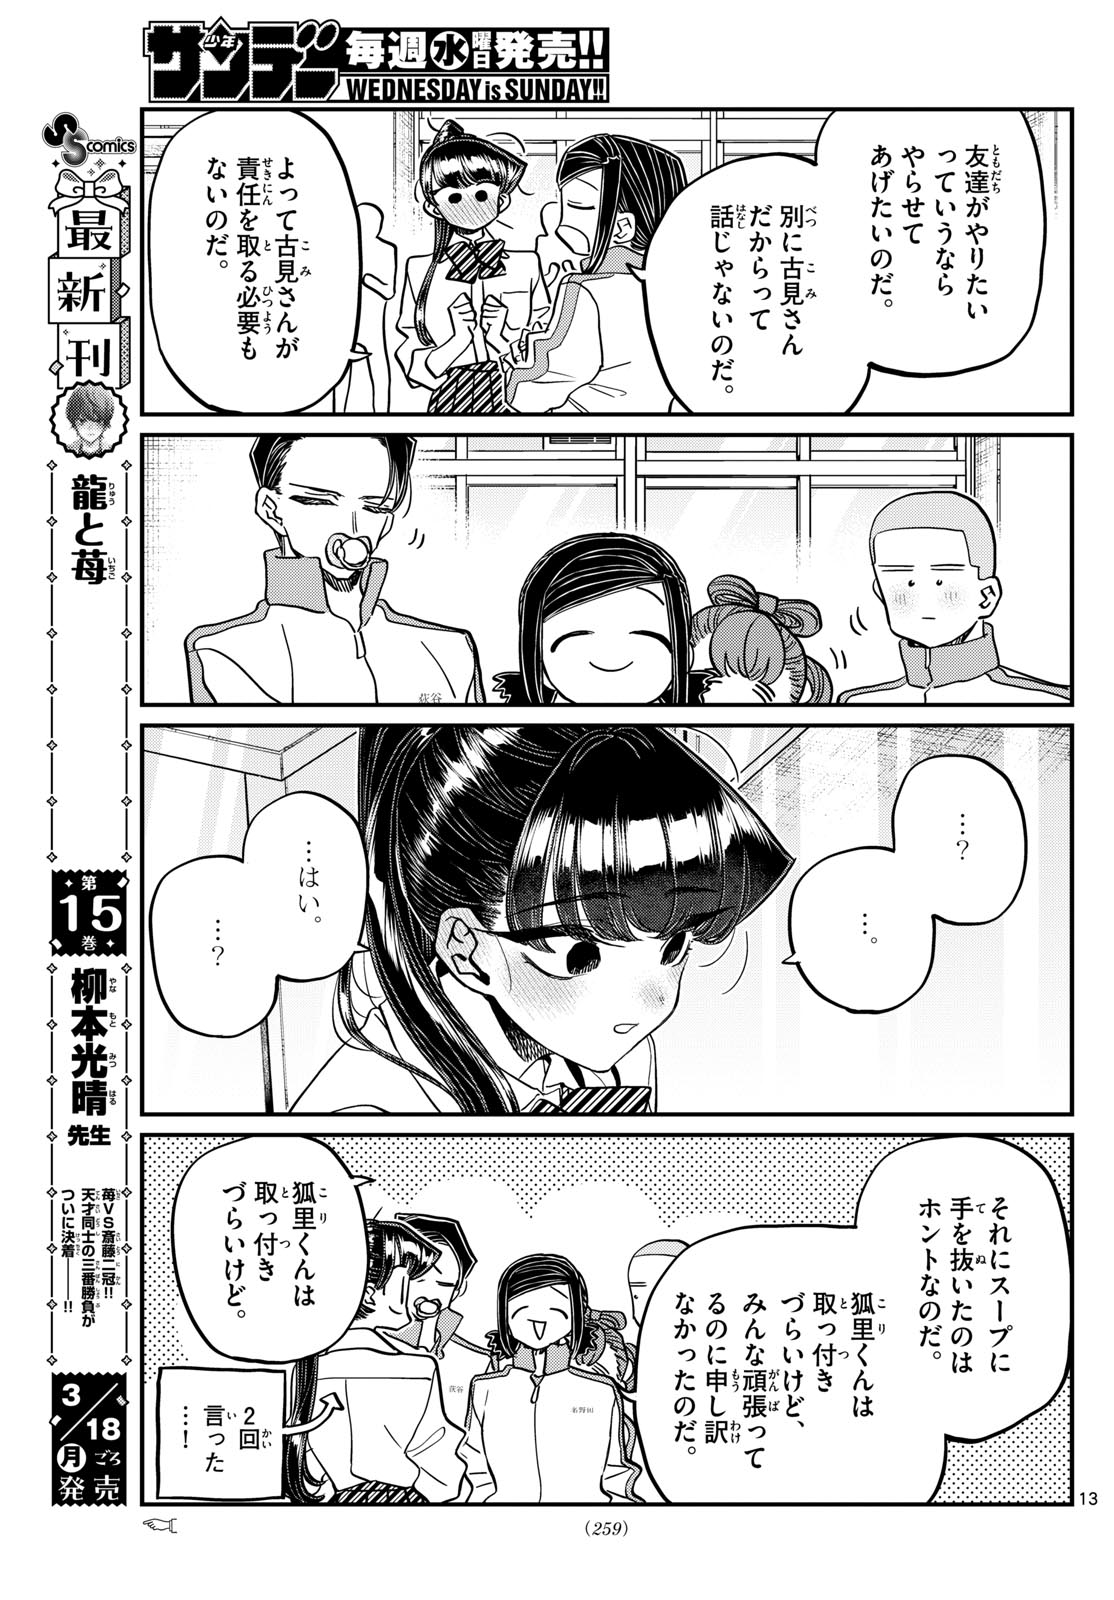 Komi-san wa Komyushou Desu - Chapter 449 - Page 13